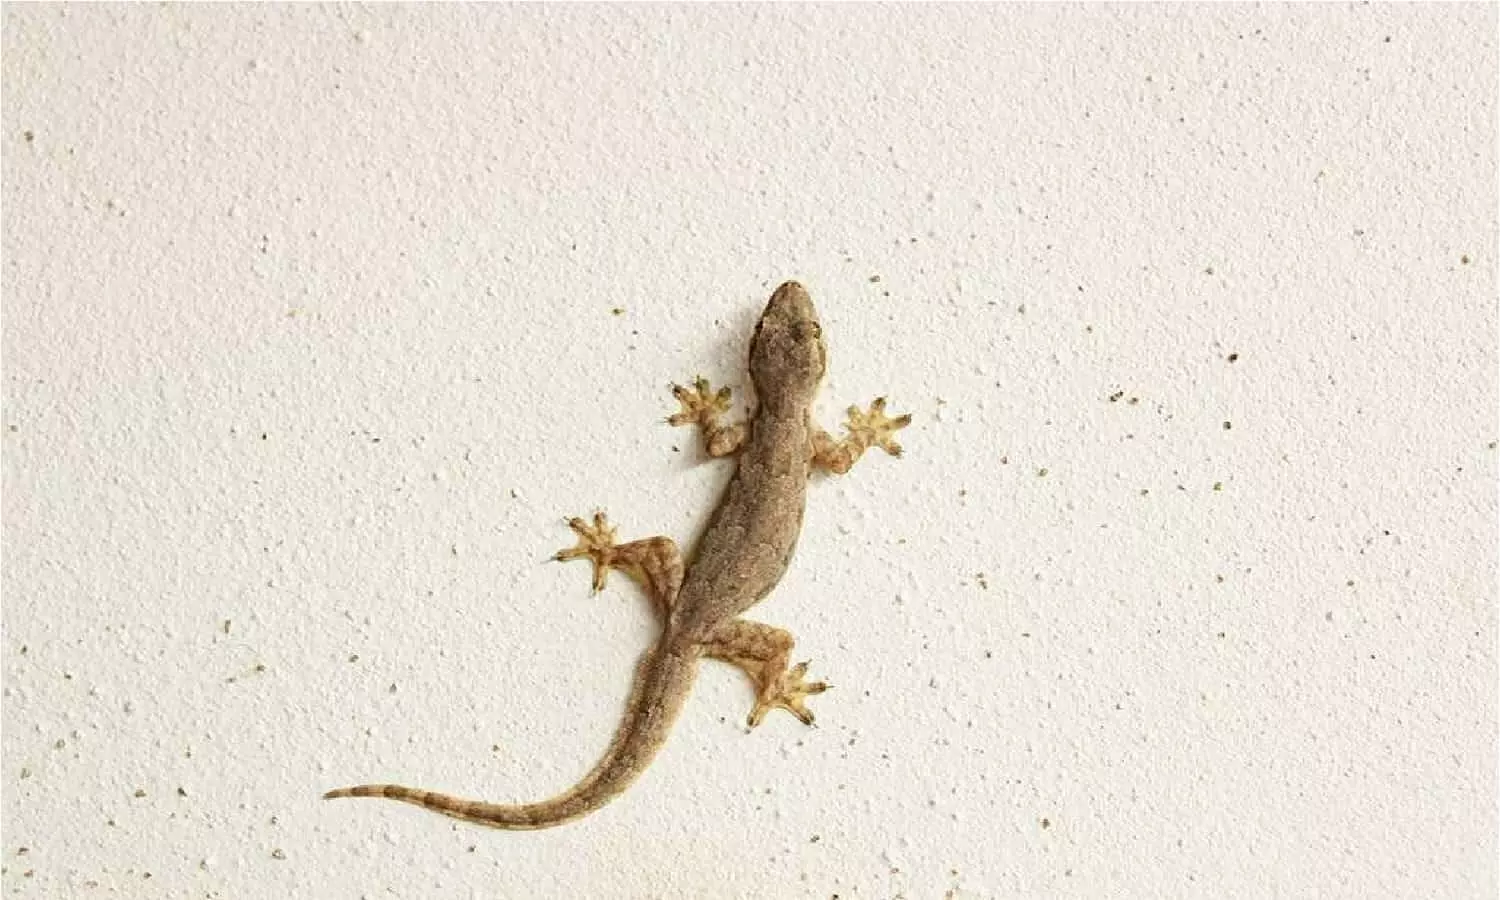 Lizard In Home: जमीन में रेंगते हुए दिख जाए छिपकली तो होने वाला है अनर्थ, खबर पढ़ खड़े हो जाएंगे रोंगटे